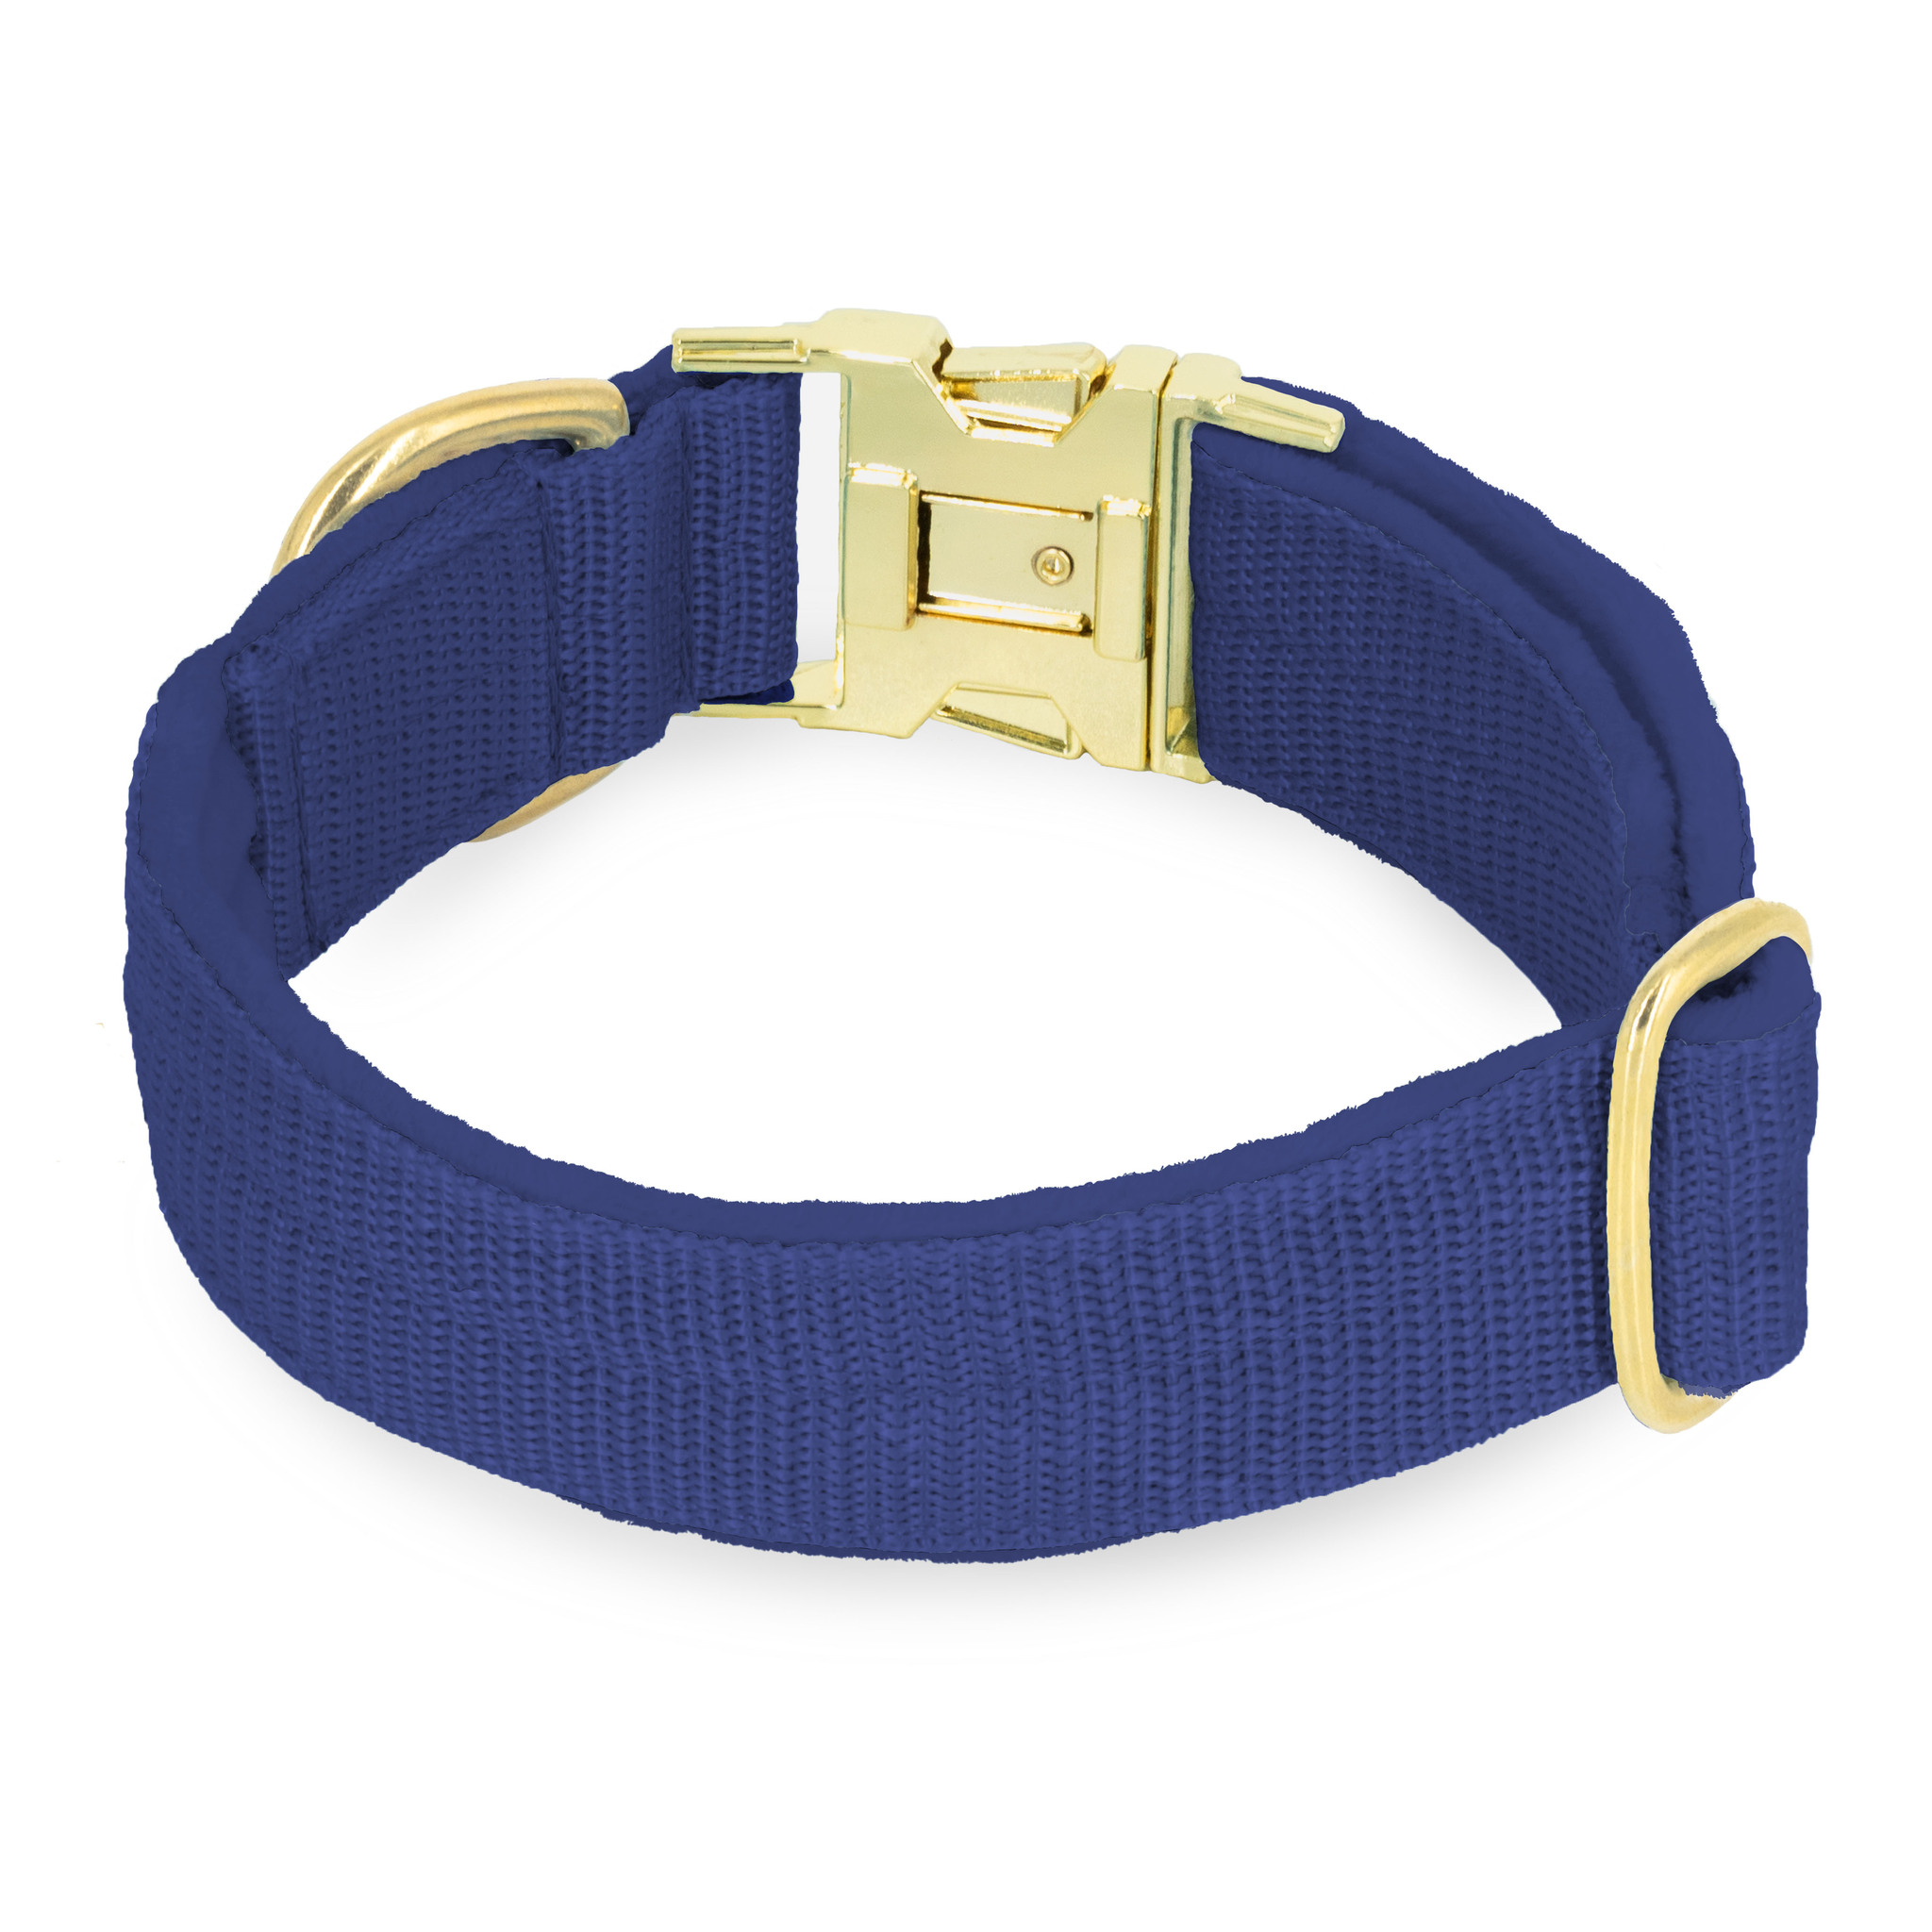 Easy Clip Golden Navy Blue - Reglerbart halsband med knäppspänne